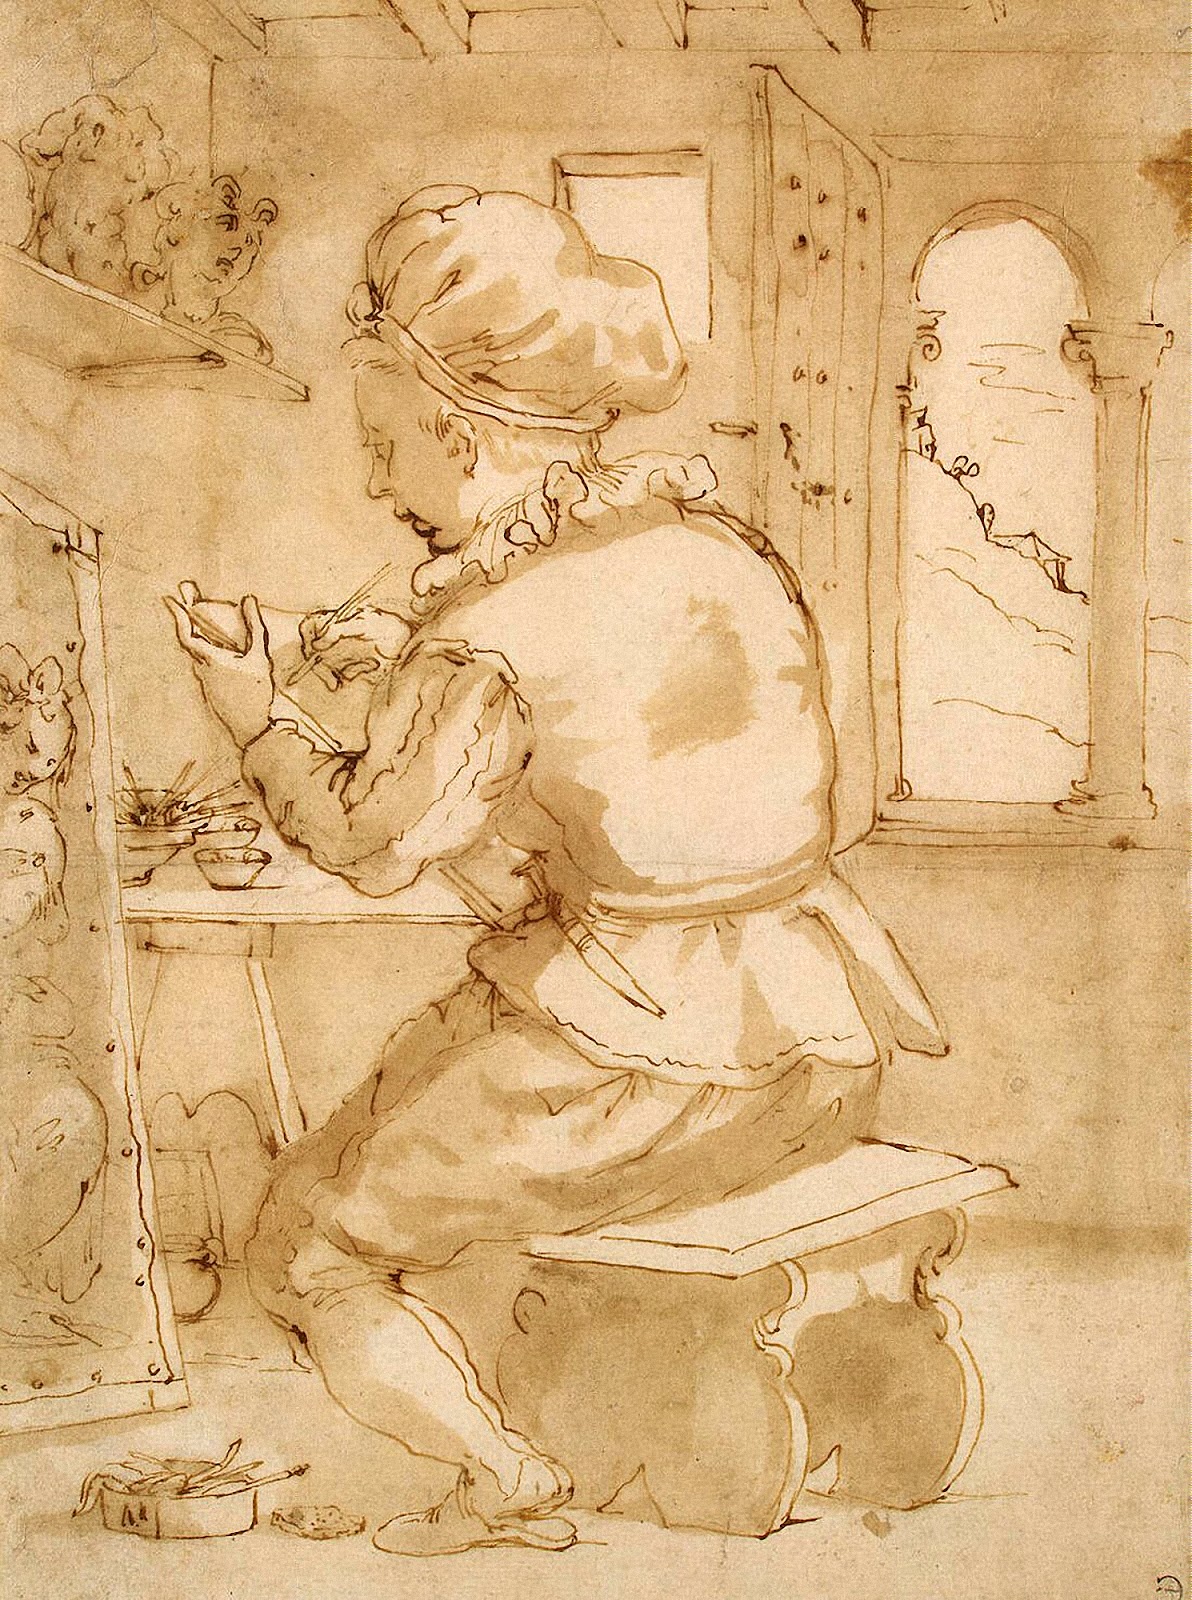 Annibale+Carracci-1560-1609 (66).jpg